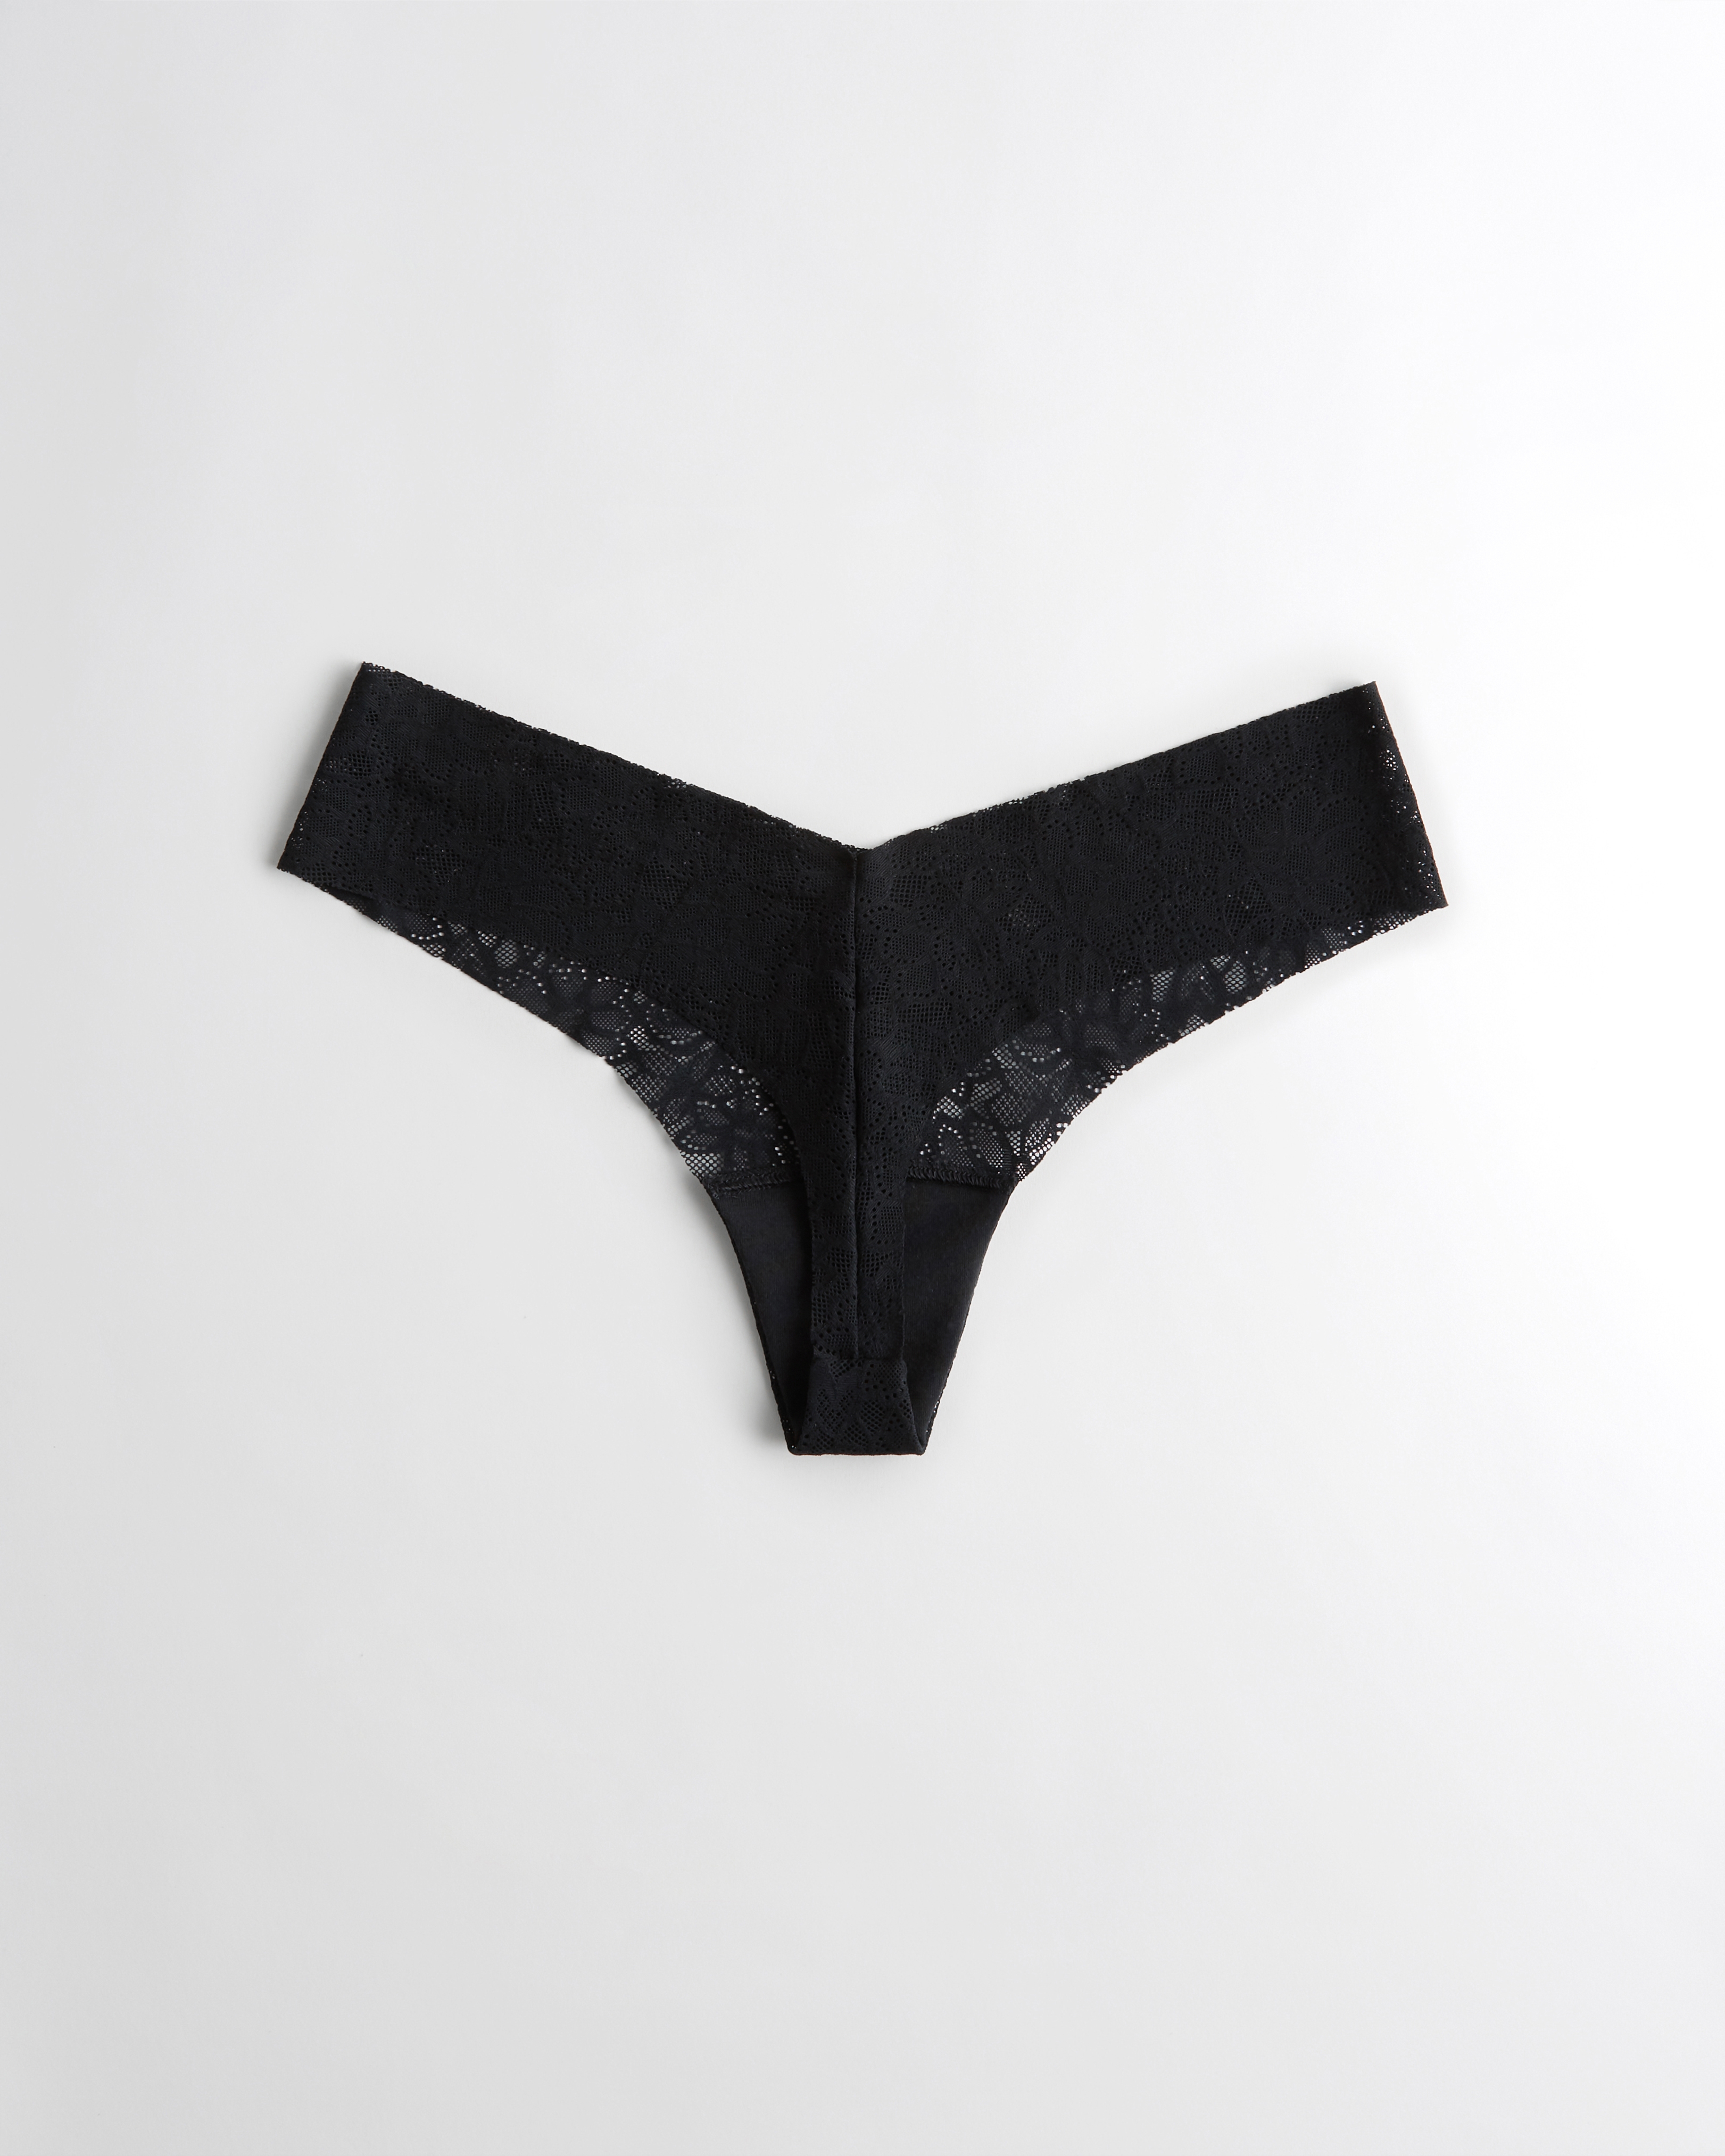 Women's Gilly Hicks No-Show Cheeky Underwear, Women's Bras & Underwear